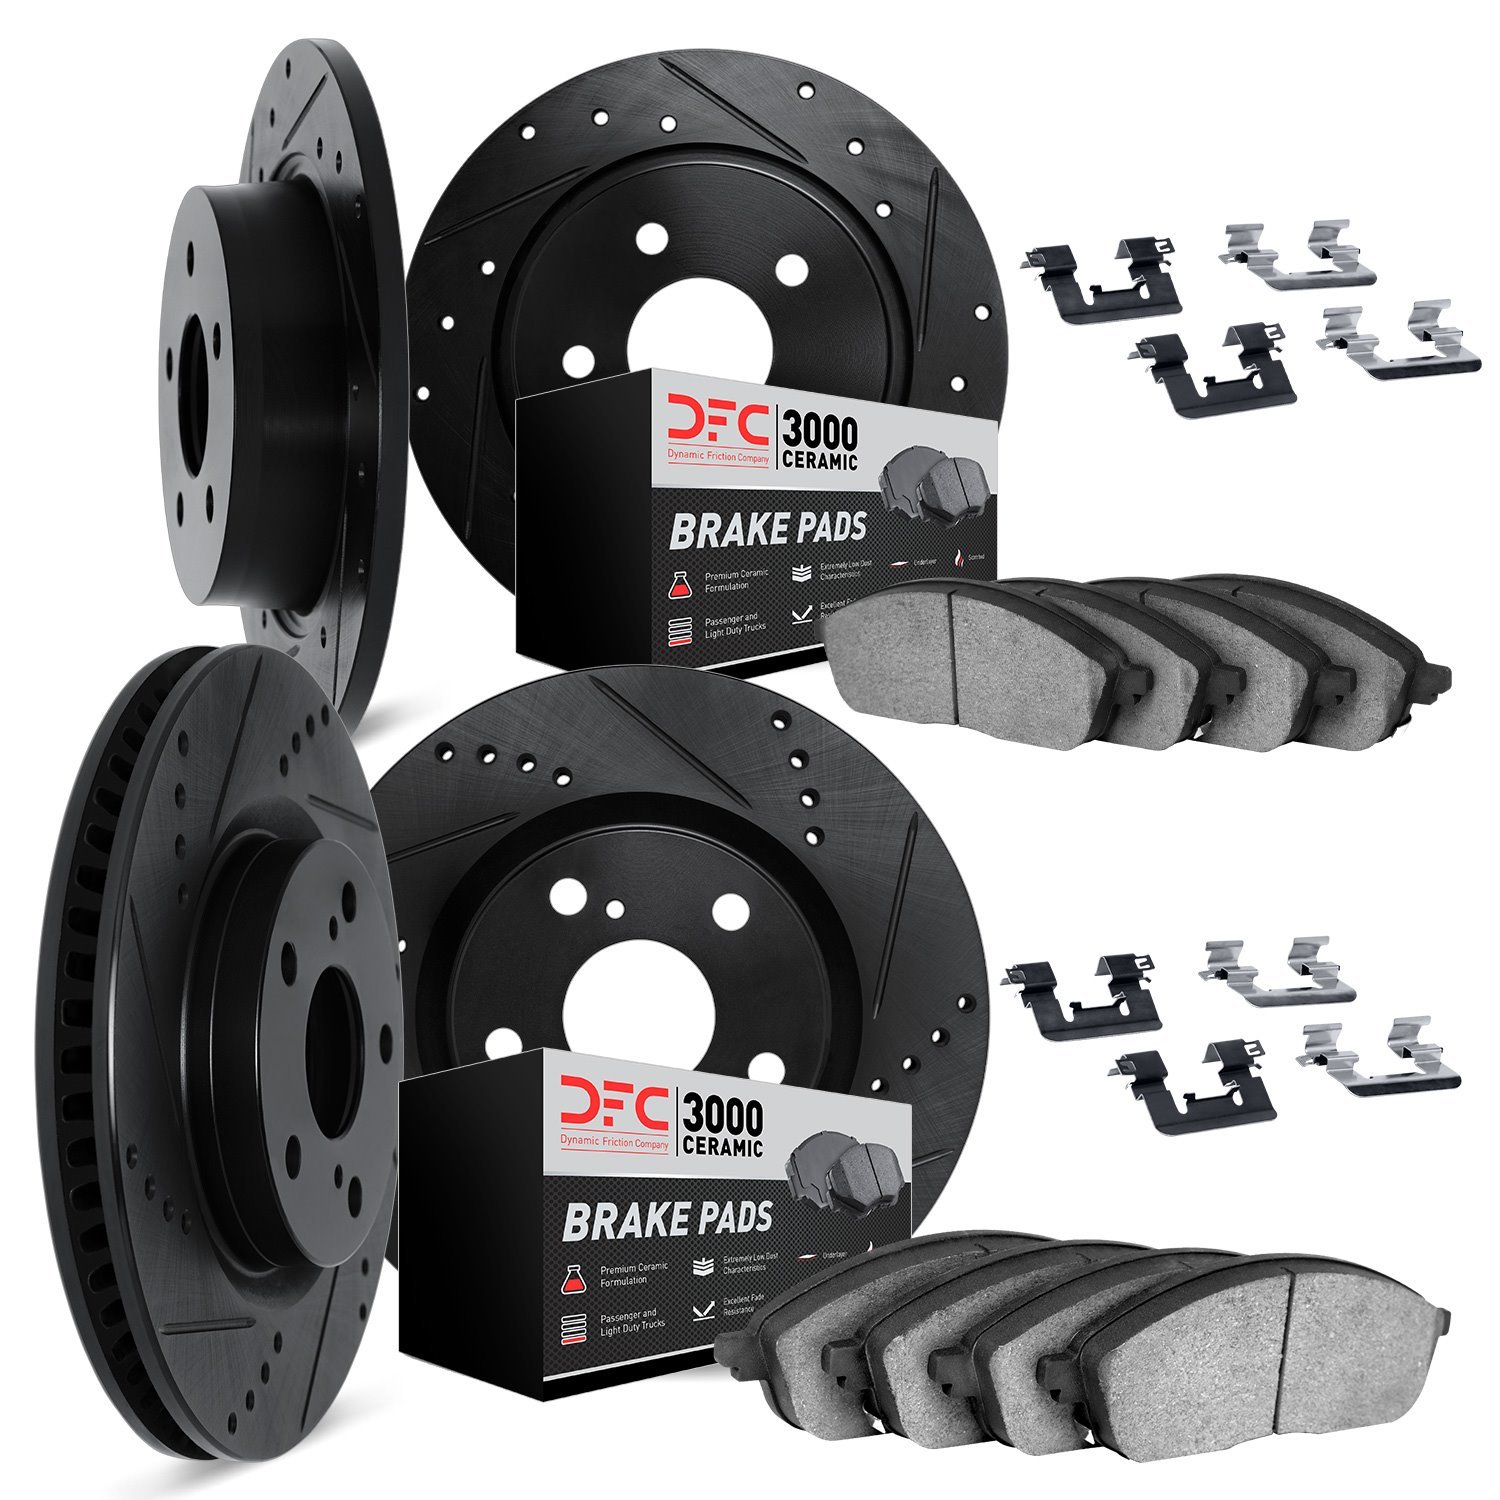 8314-76093 Drilled/Slotted Brake Rotors with 3000-Series Ceramic Brake Pads Kit & Hardware [Black], 2008-2013 Lexus/Toyota/Scion